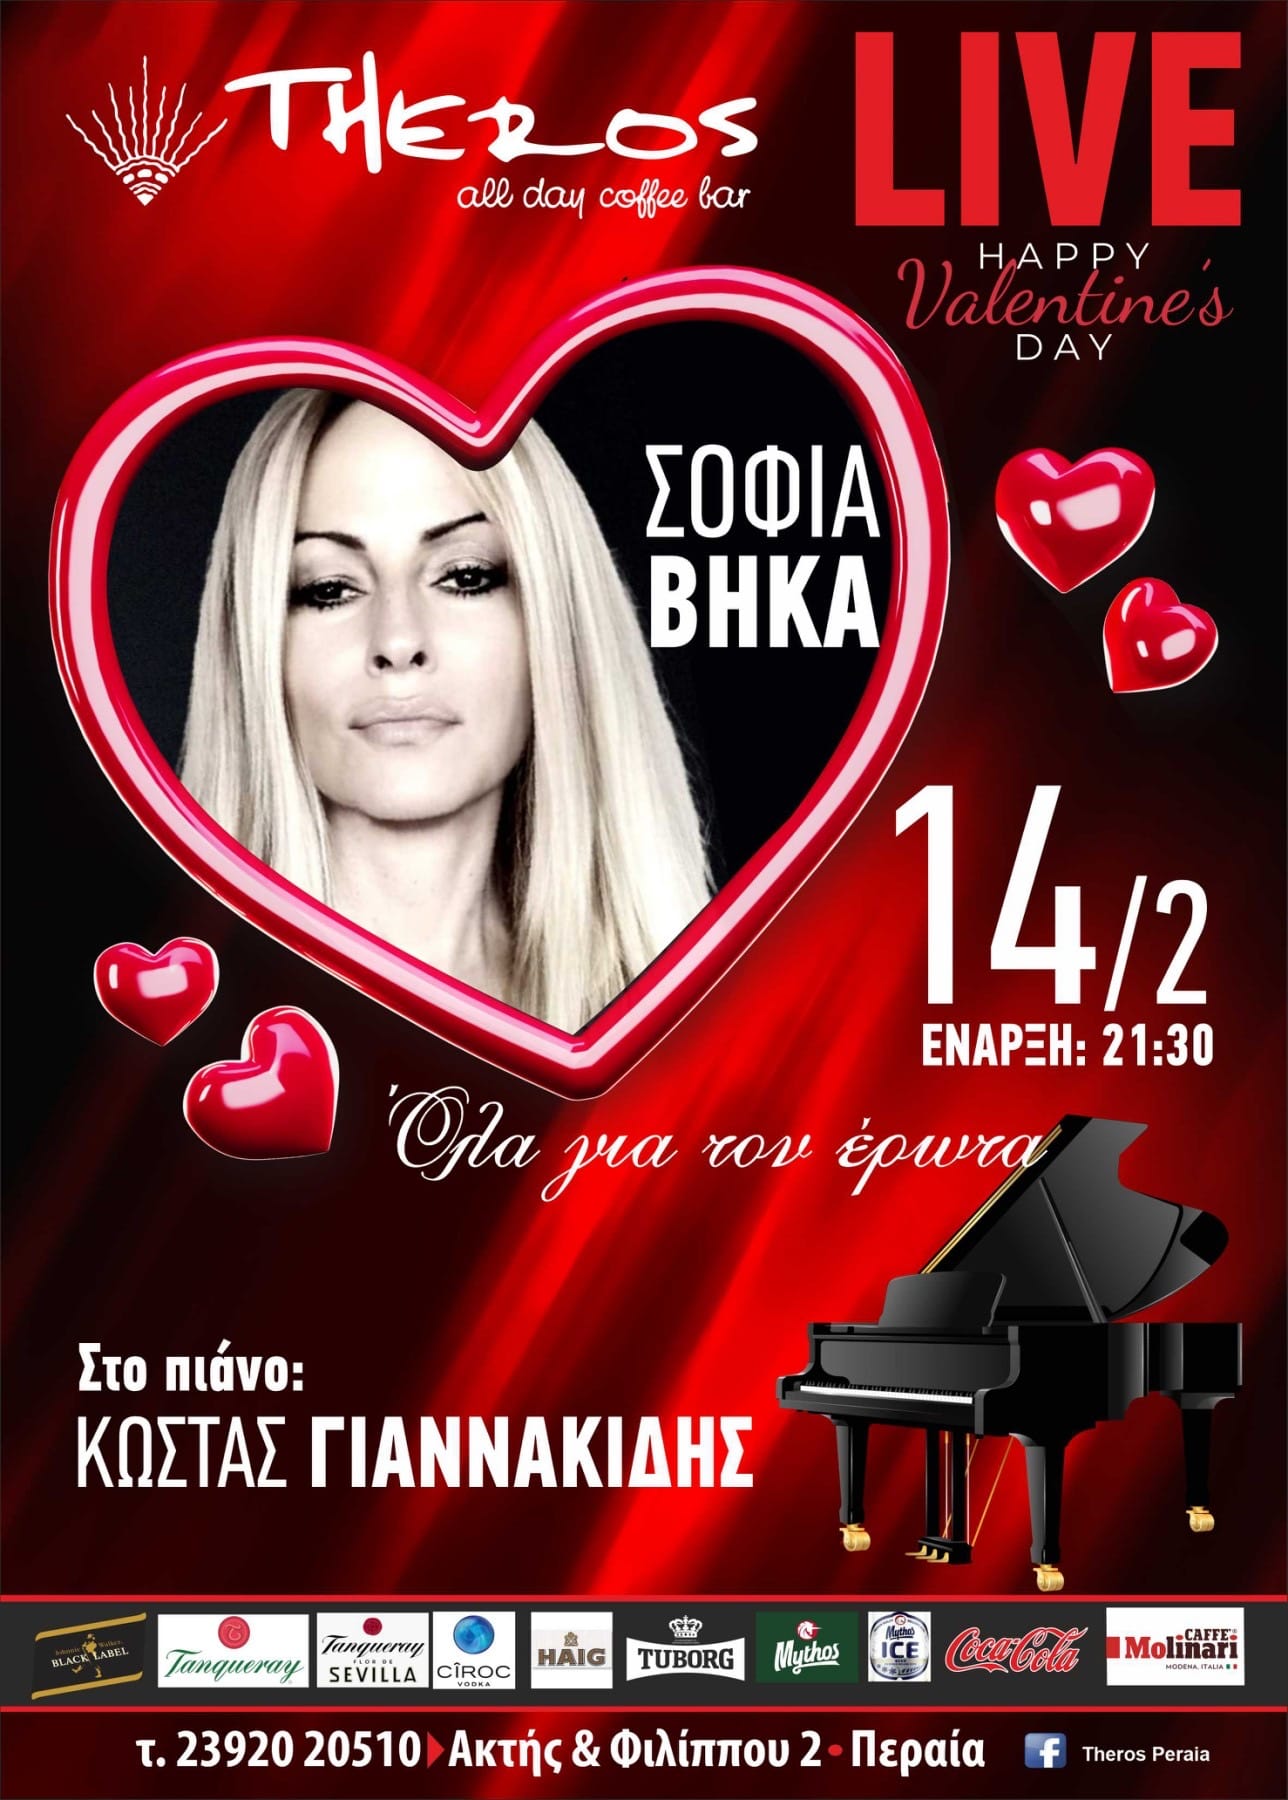 Η Σοφία Βήκα περιμένει τους ερωτευμένους την επόμενη Τρίτη στο “Theros”: ” Το πιάνο, η φωνή μου και η φωνή σας!!!”